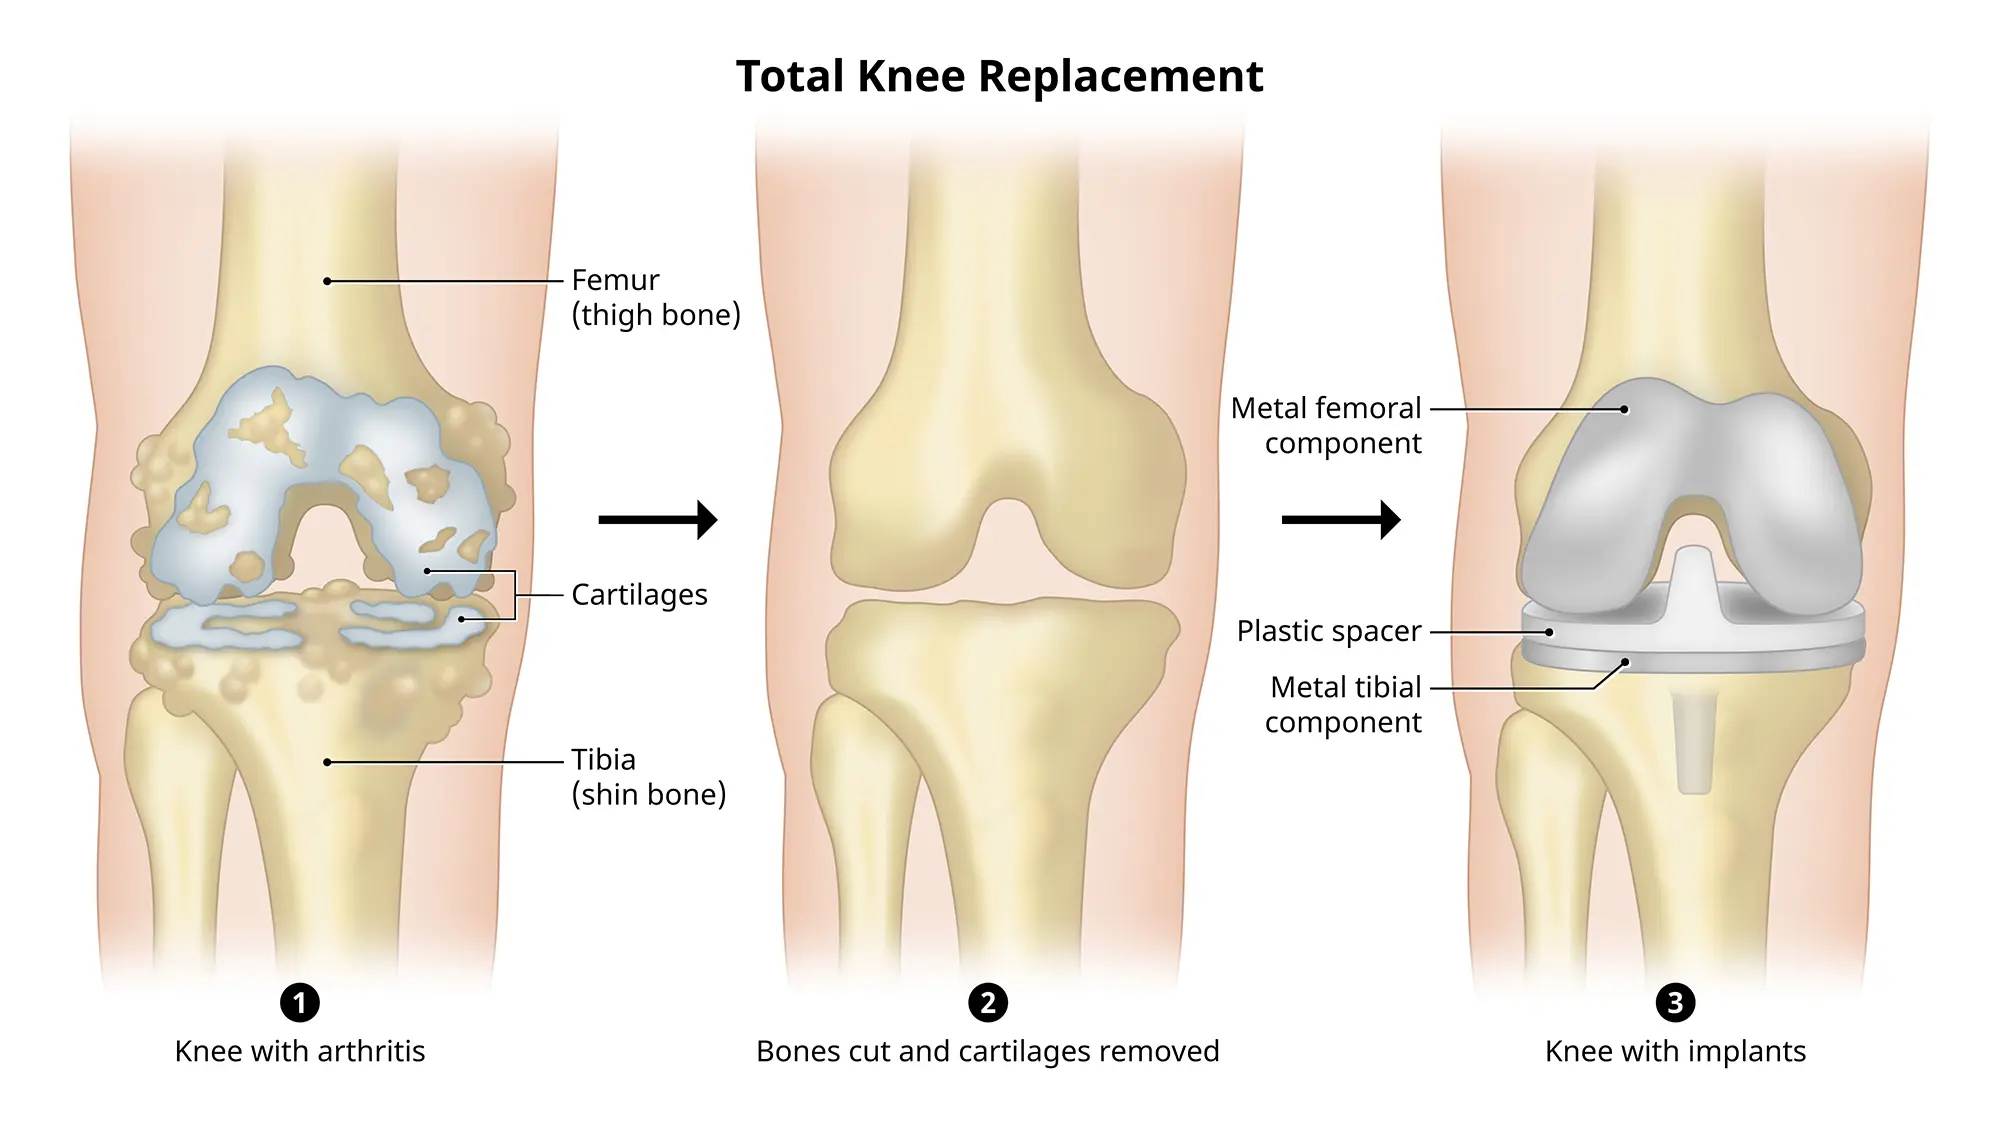 在全膝关节置换术中，会将股骨和胫骨的受损端切除并替换为假体。